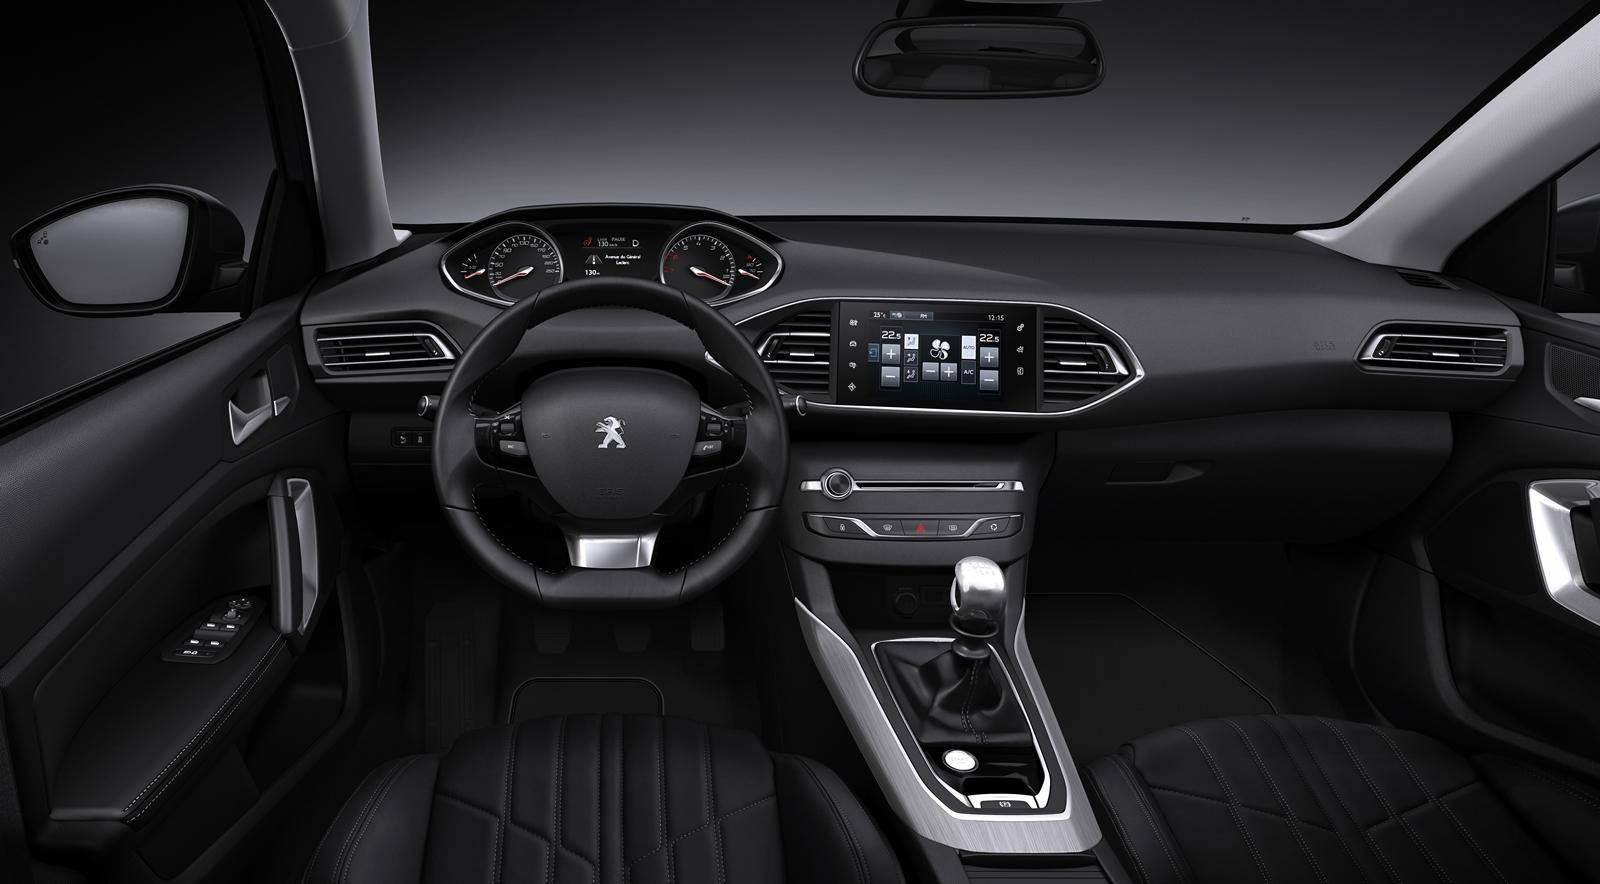 2014 Peugeot 308 interior